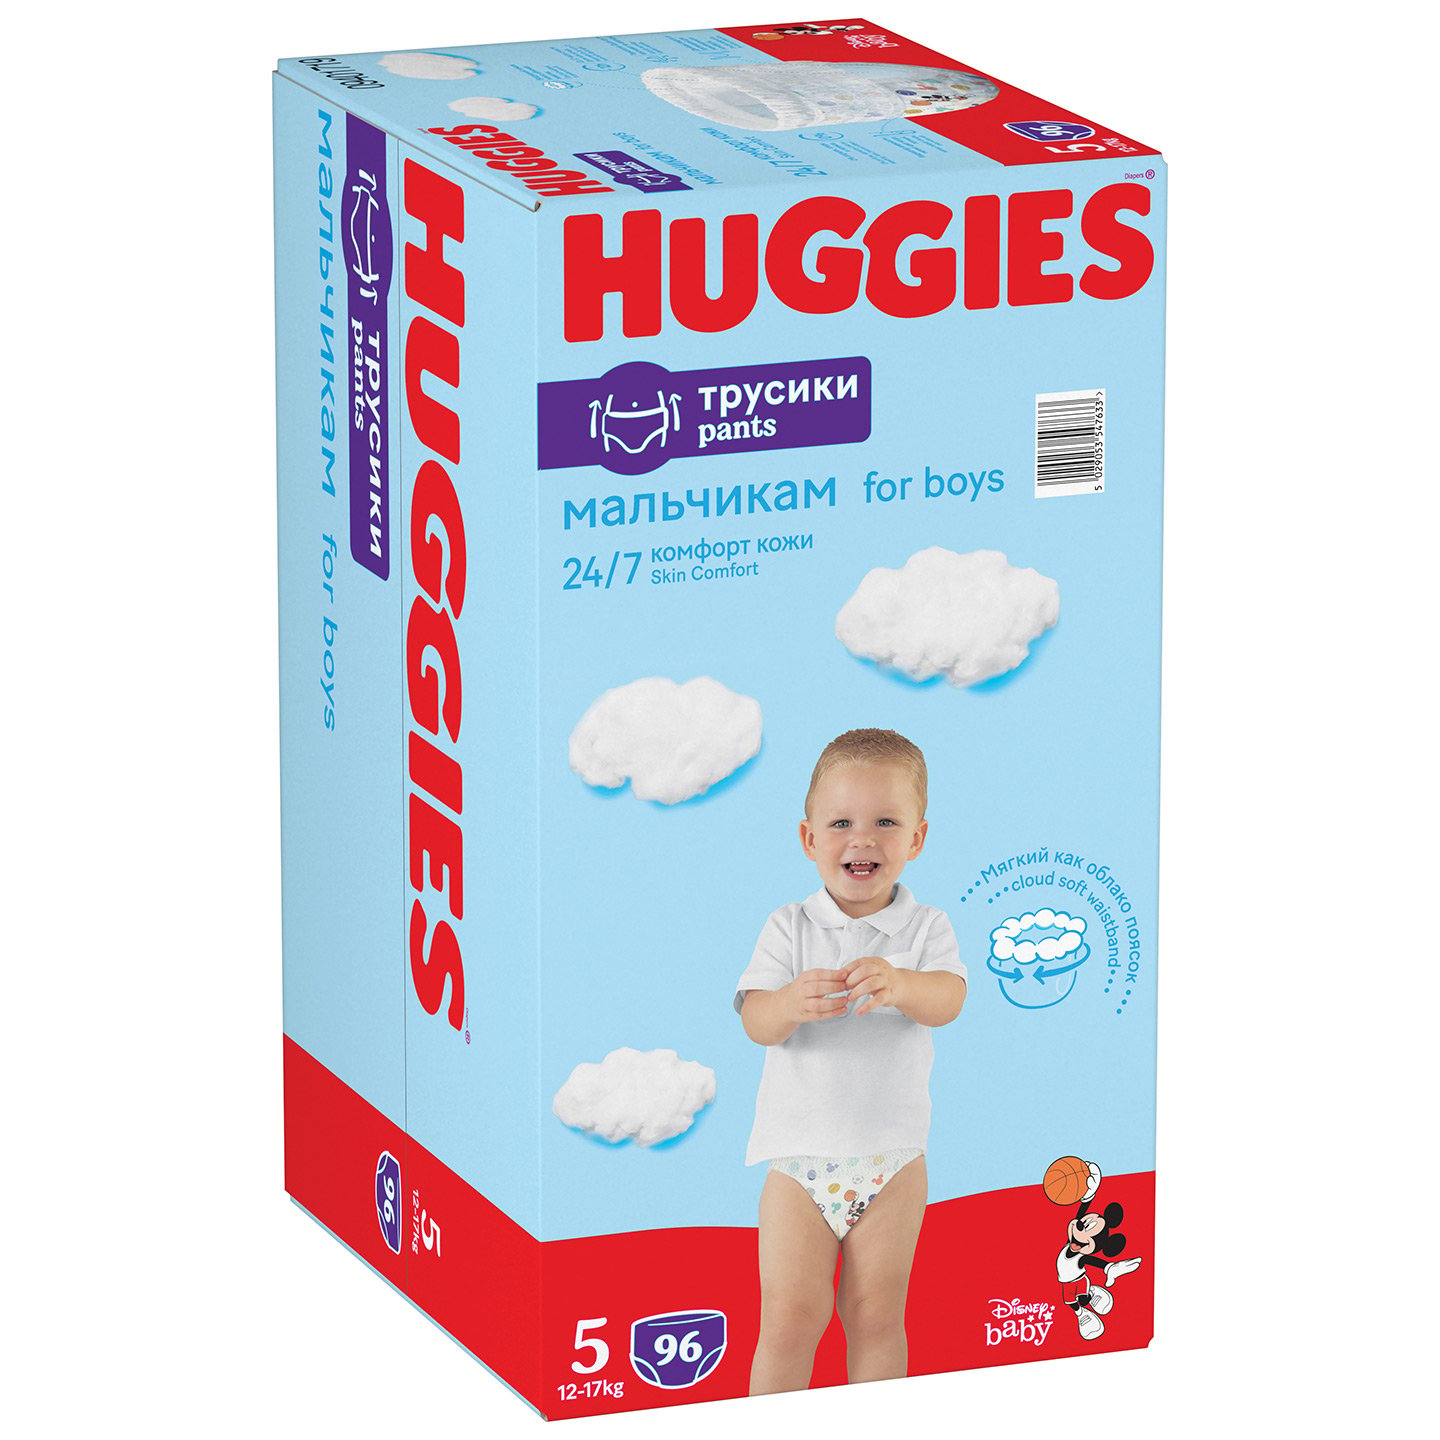 Набор трусиков-подгузников для мальчиков Huggies Pants 5 (12-17 кг), 96 шт. (2 уп. по 48 шт.) - фото 2